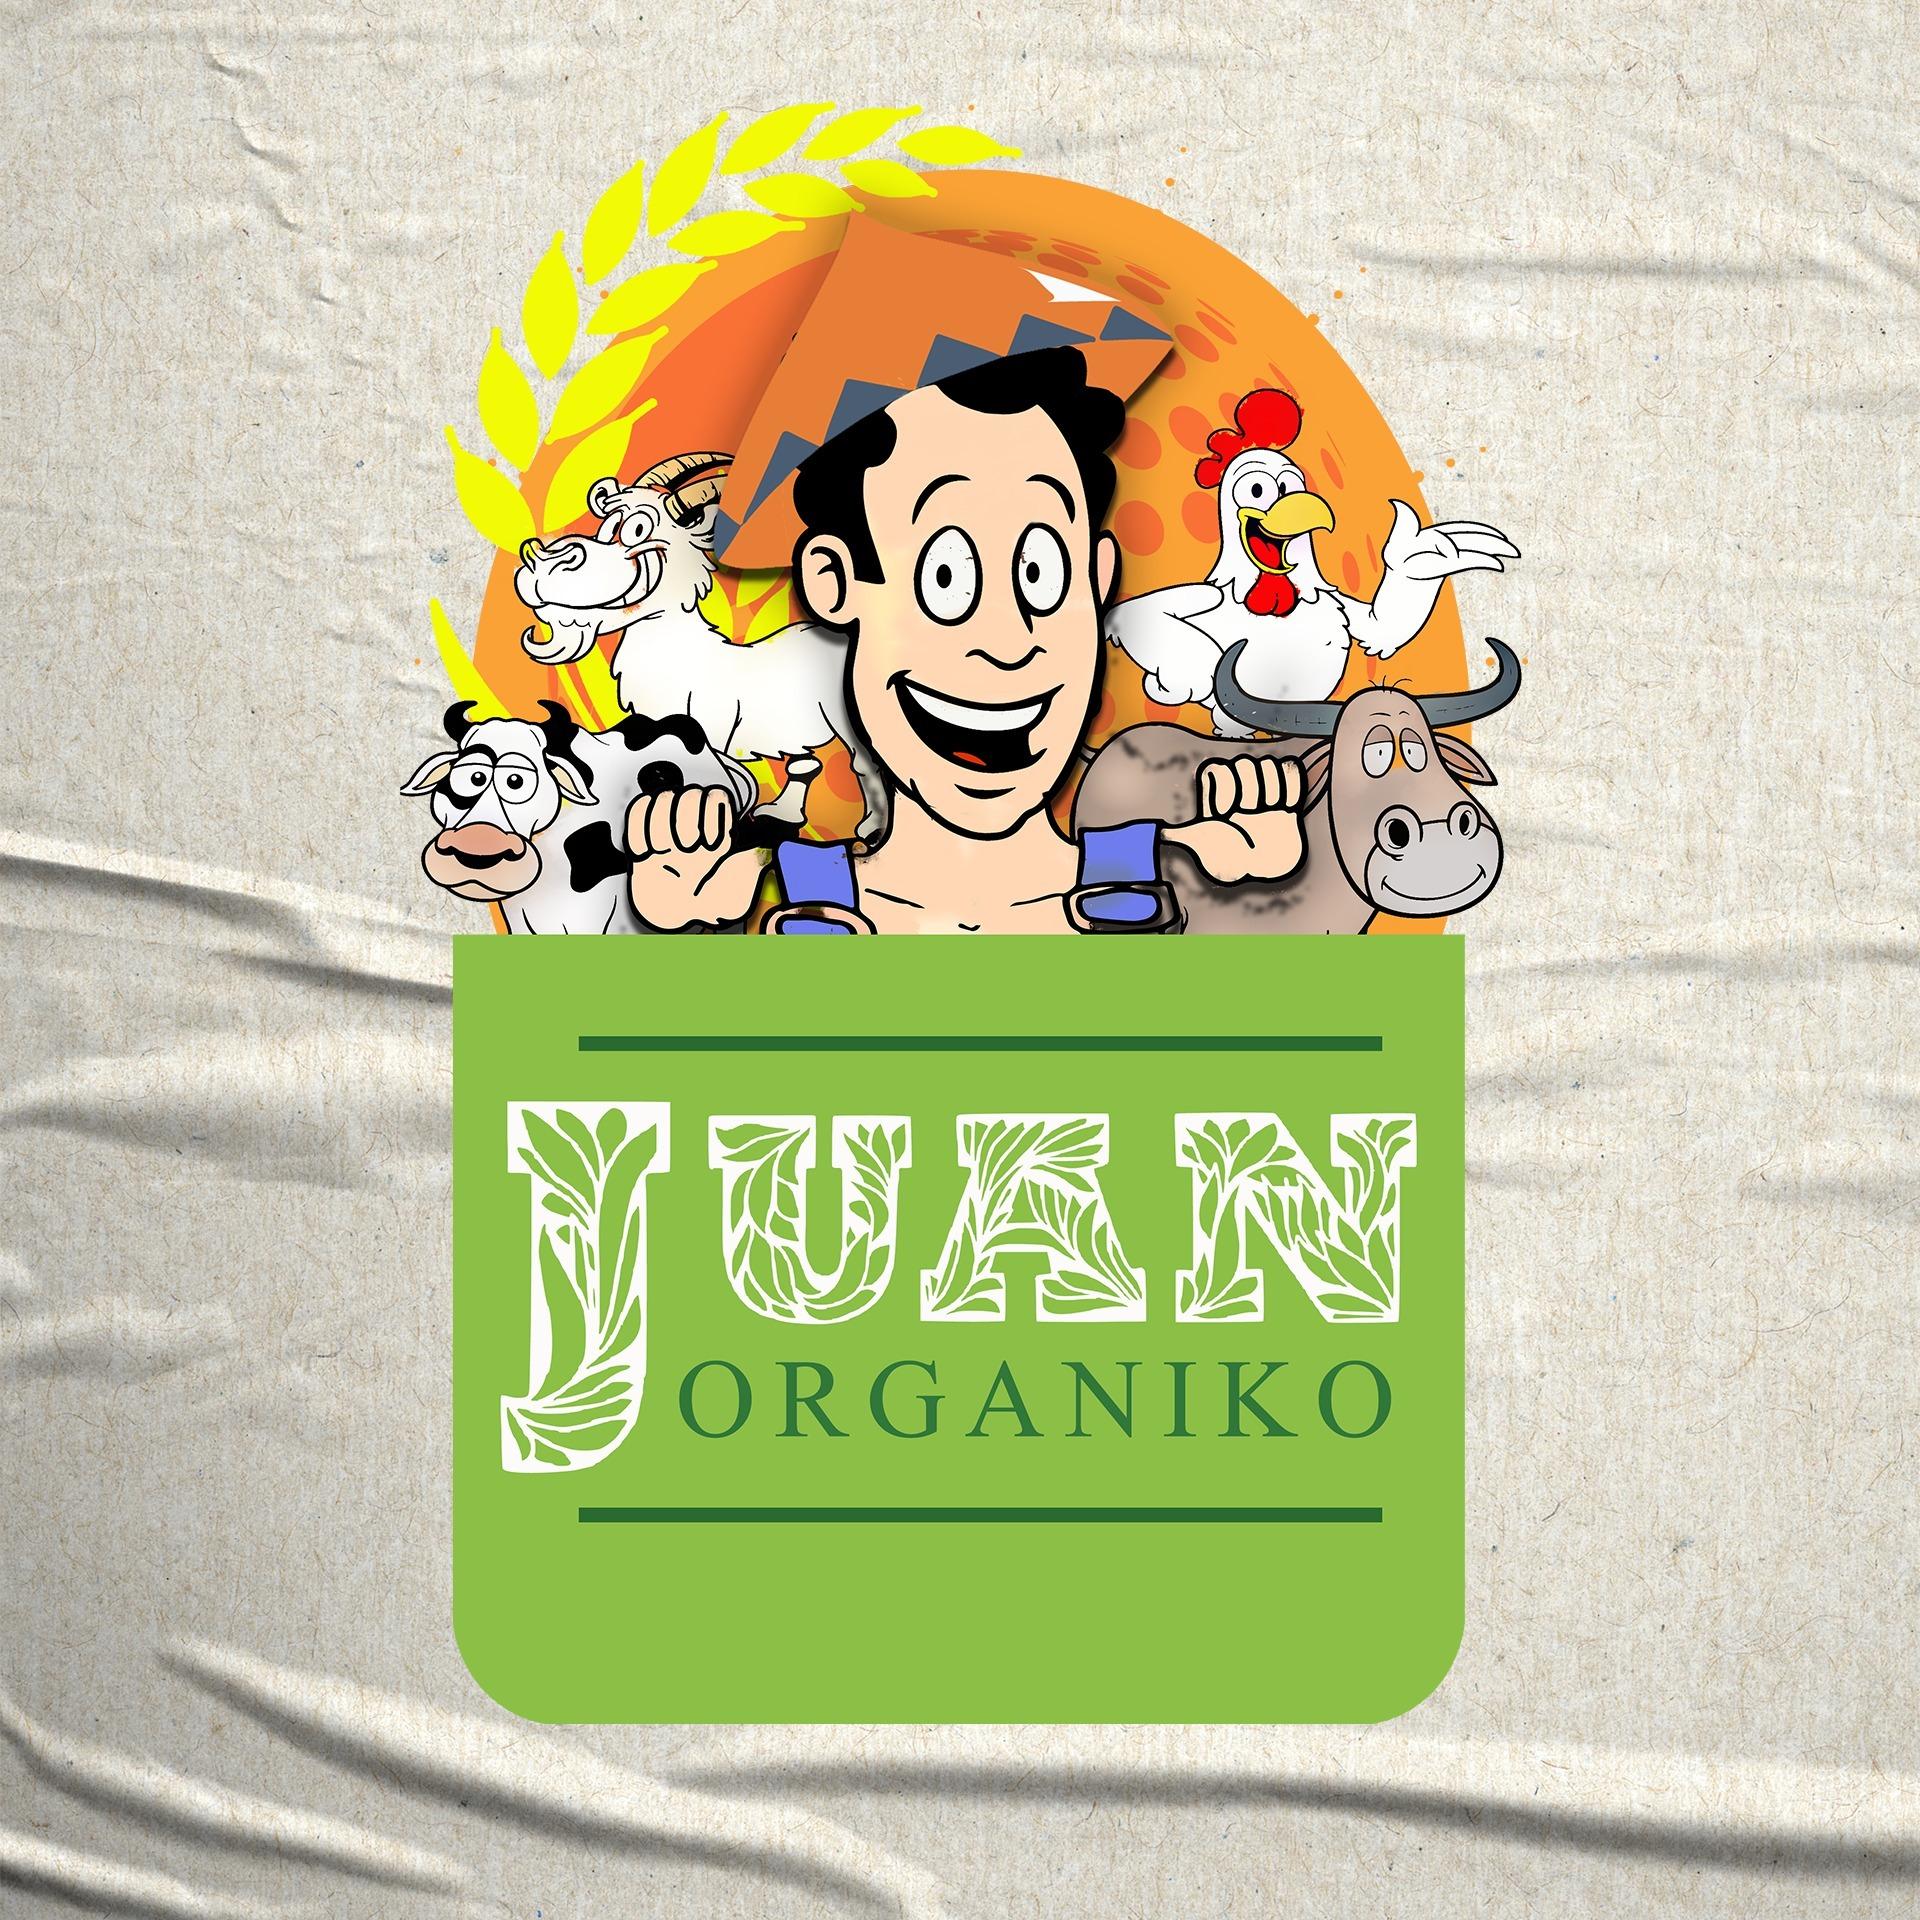 Juan Organiko